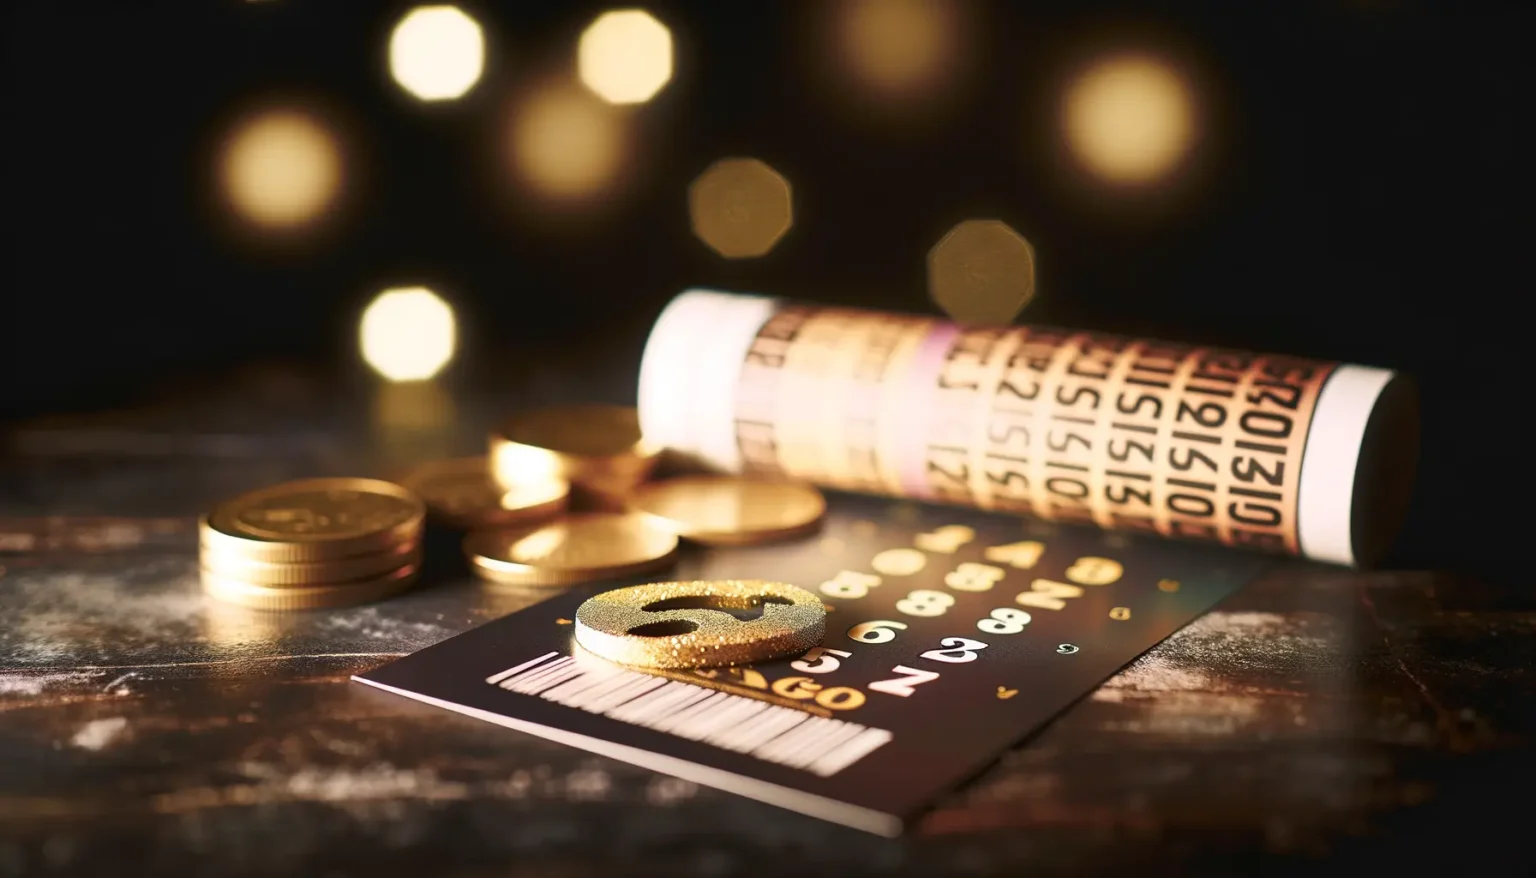 Glänzende Münzen und ein aufgerollter Geldschein neben einem glitzernden goldenen Euro-Zeichen auf einer Rubbelkarte, mit unscharfem Licht im Hintergrund auf einer dunklen Oberfläche.